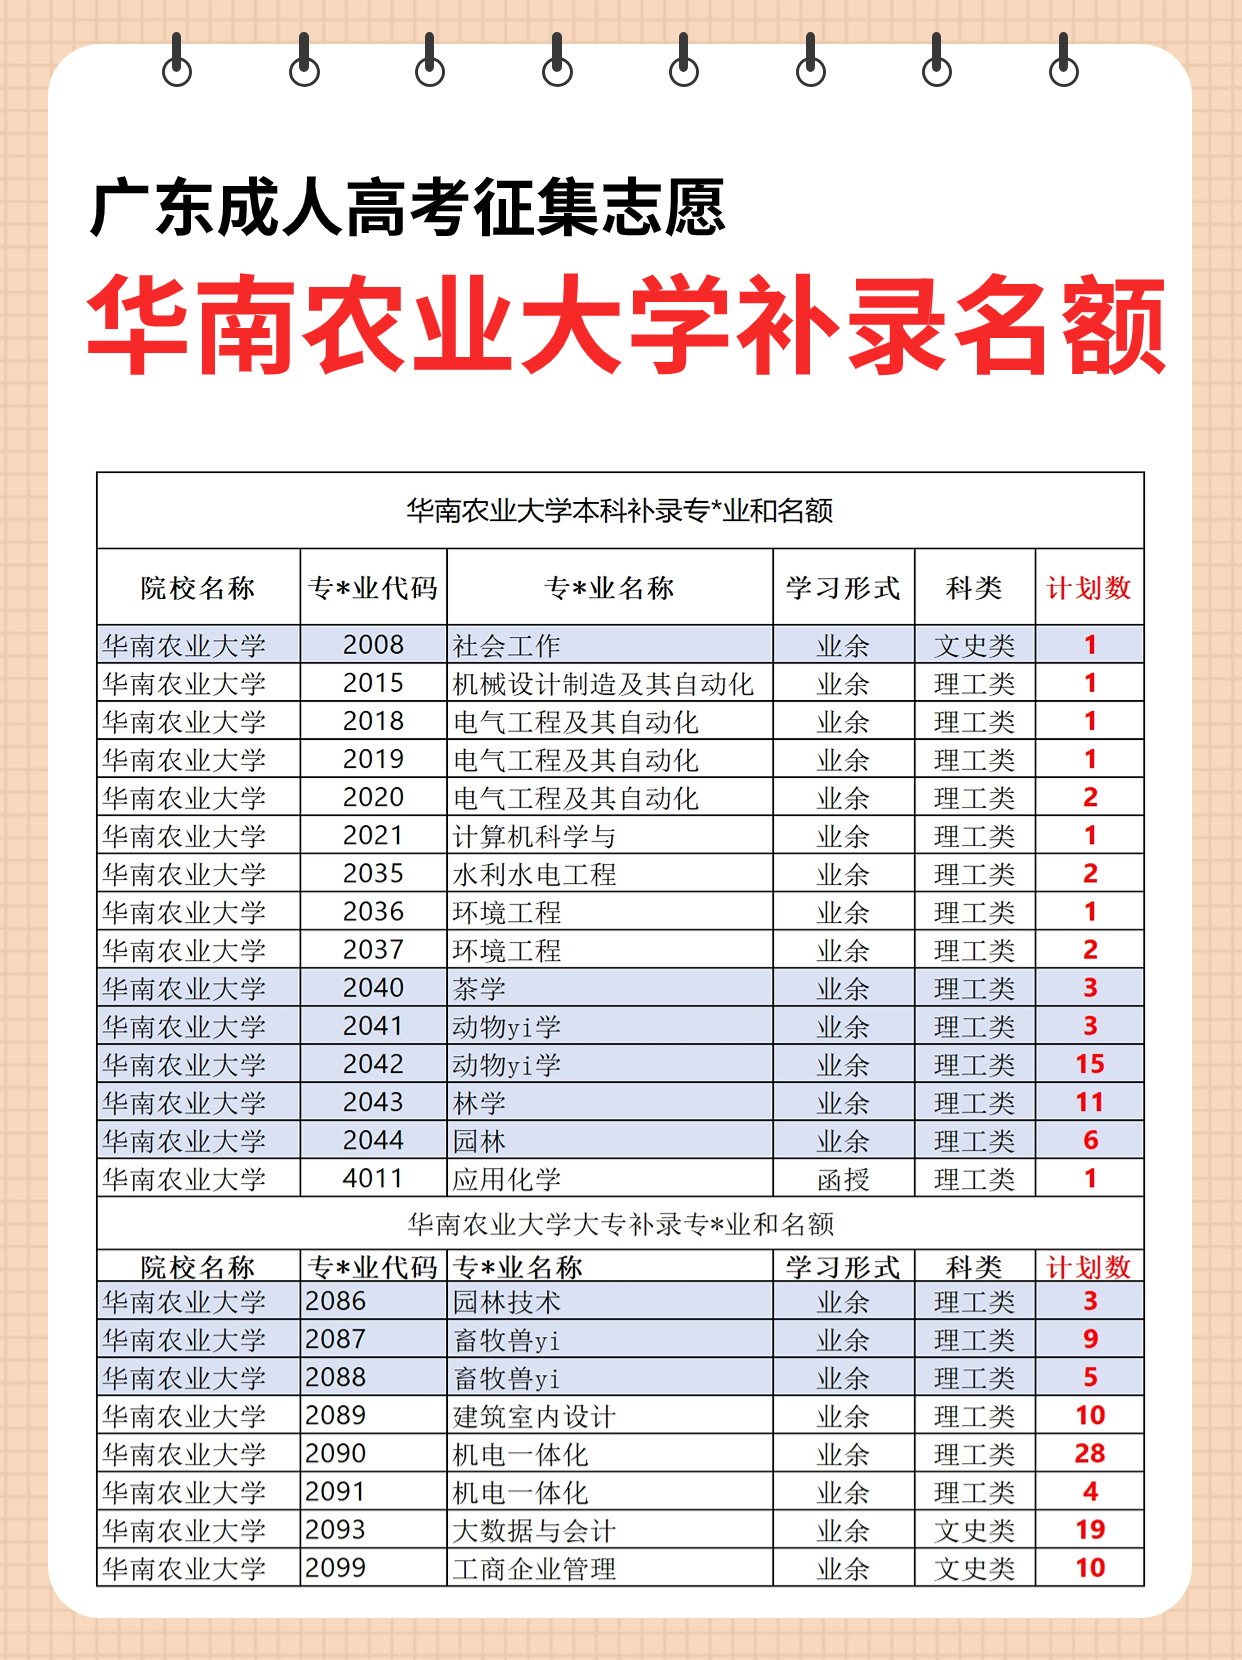 华南农业大学成人高考大专本科补录取专业和名额